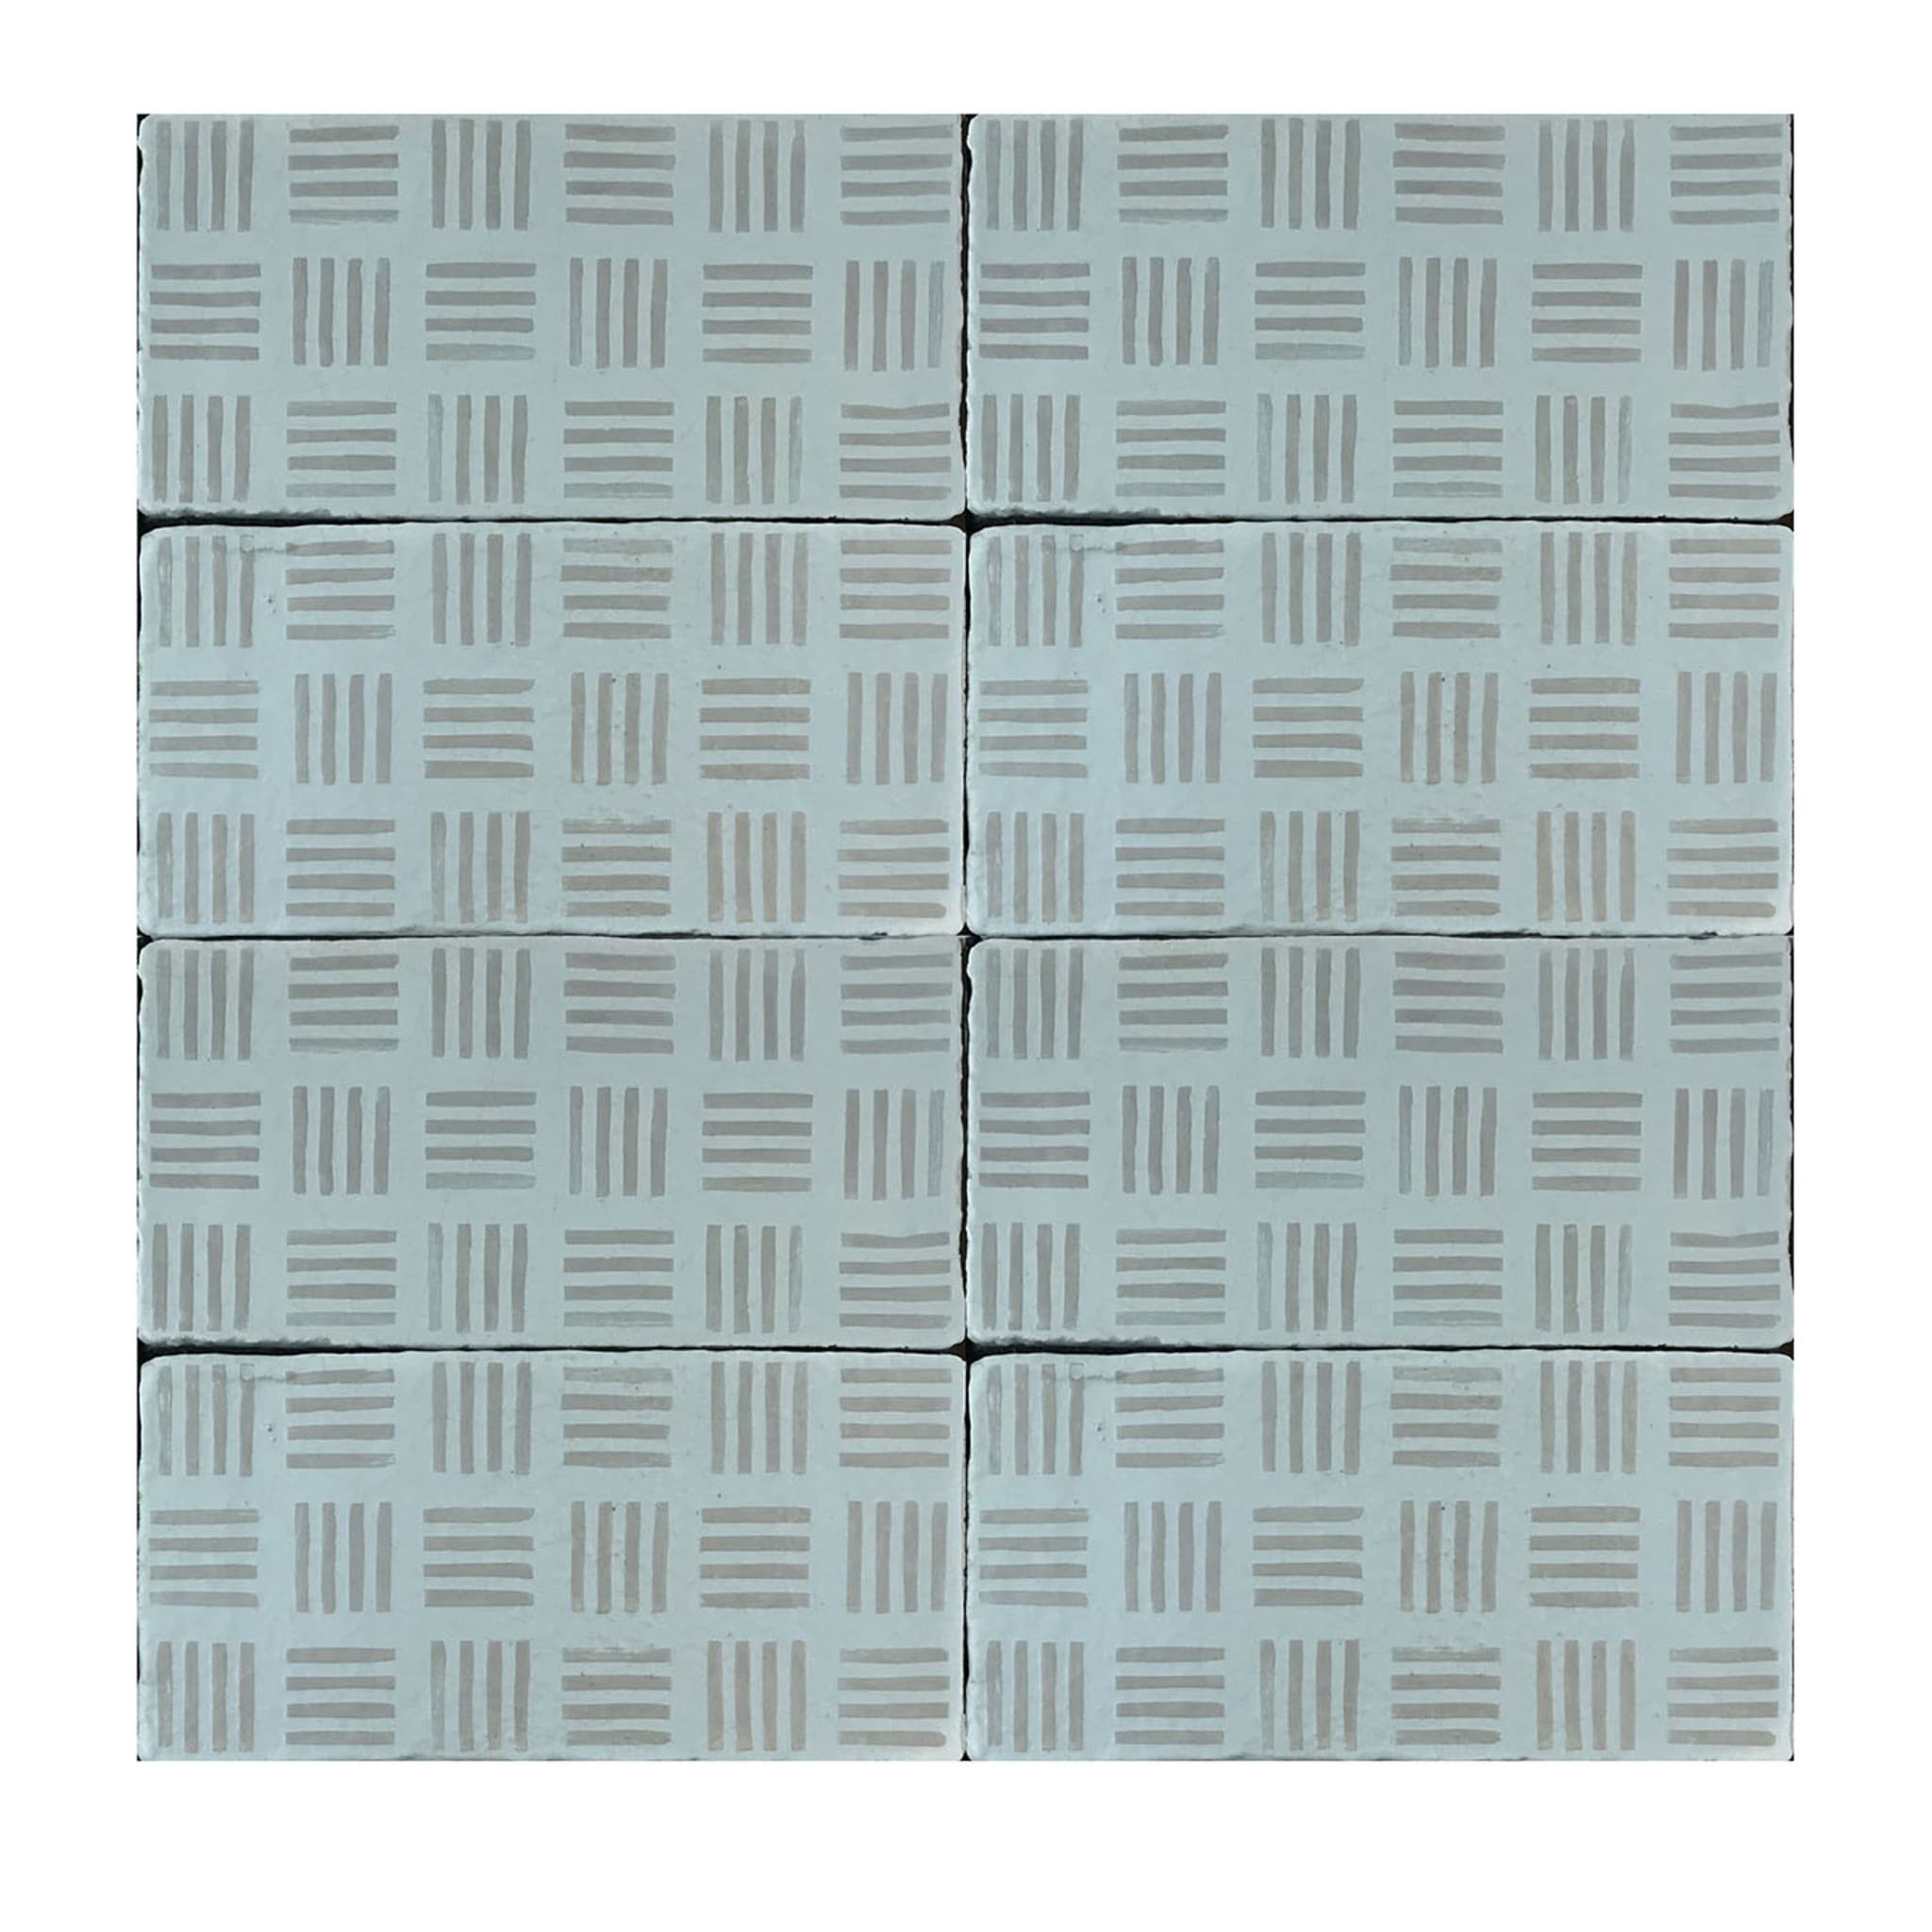 Daamè Lot de 50 carreaux rectangulaires gris clair #2 - Vue principale